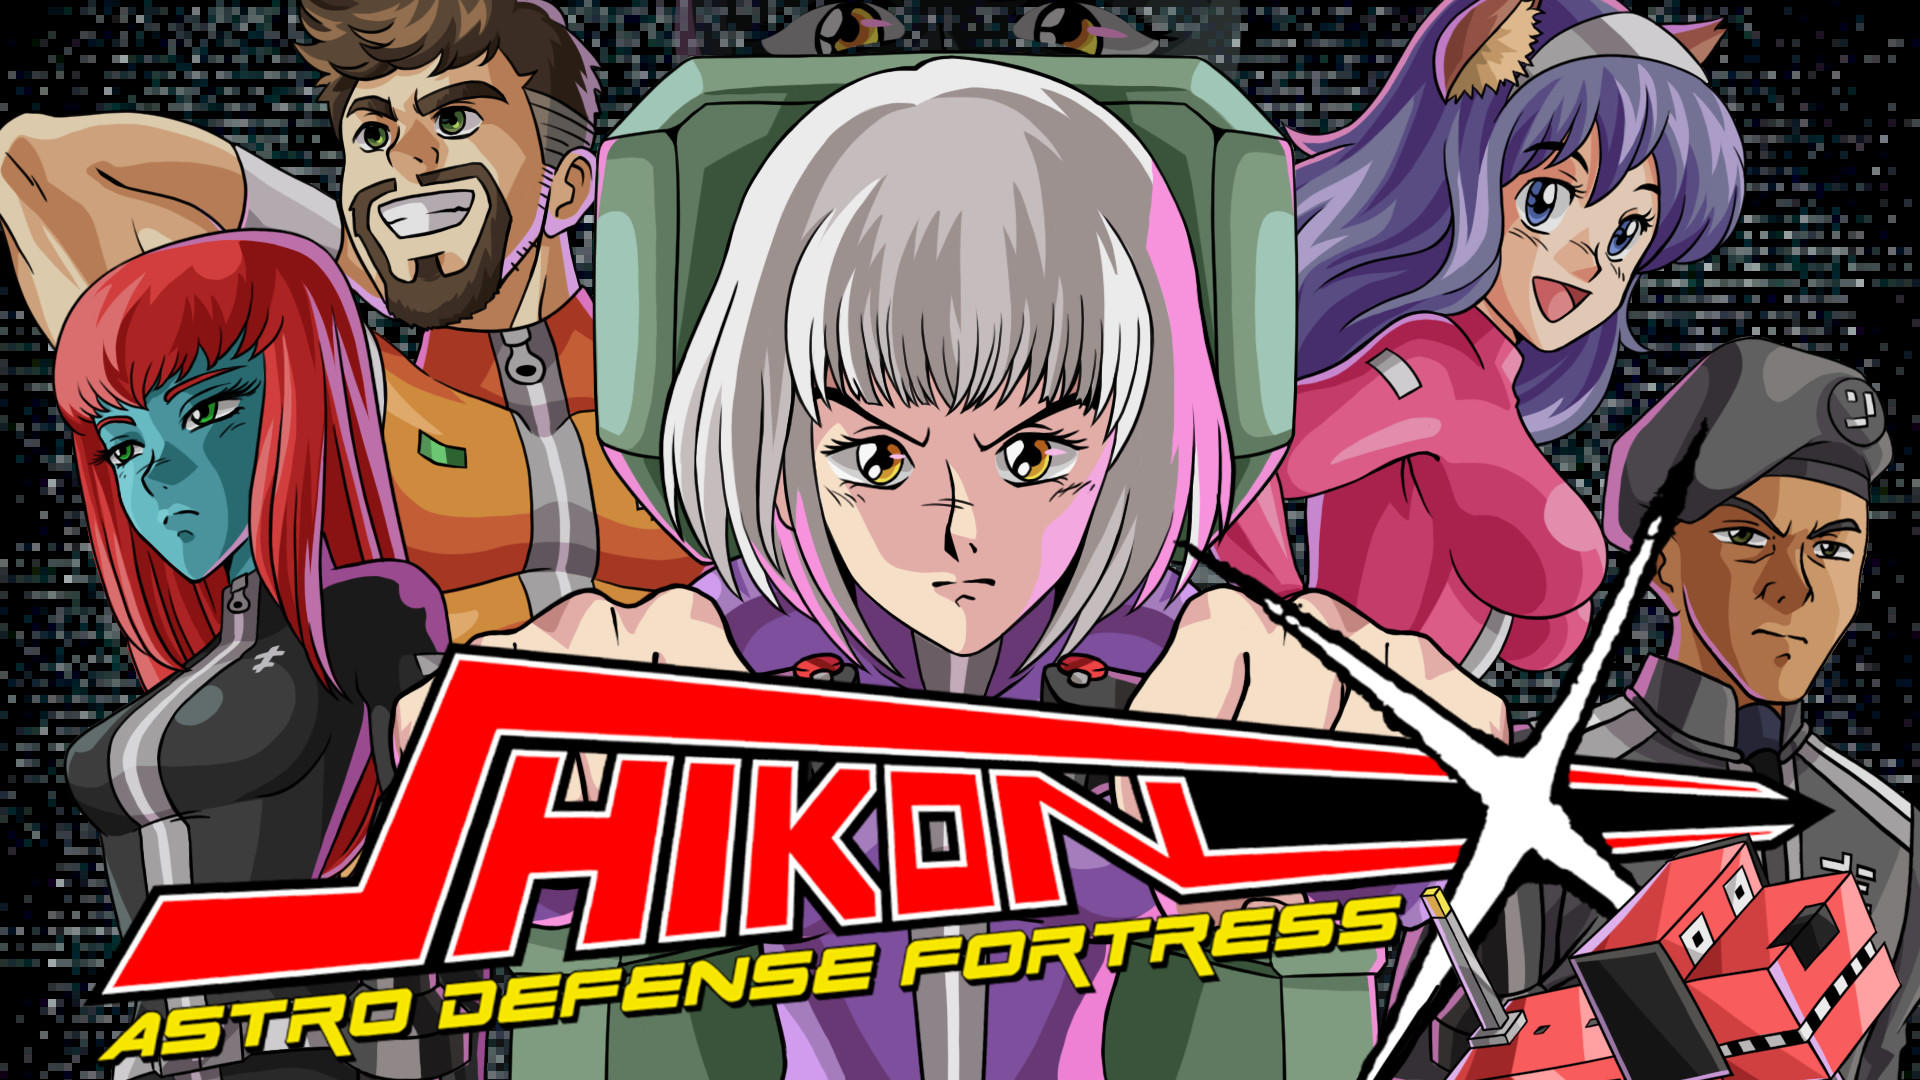 Shikon-X Astro Defense Fortress 게임 스크린 샷